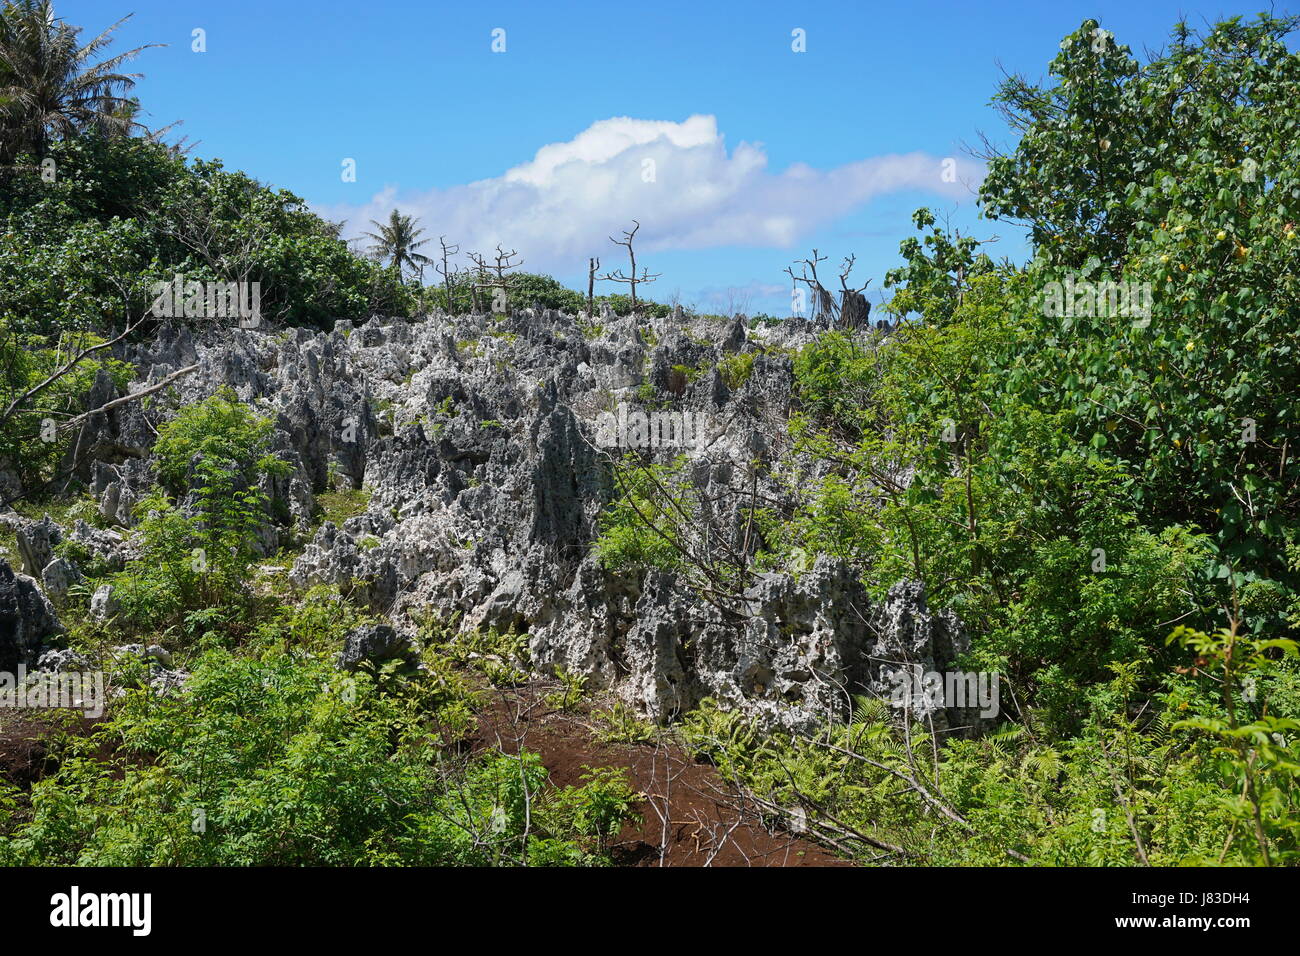 Zerklüftete Landschaft auf der Insel Rurutu mit vielen erodierte Kalkstein Felsen, Französisch-Polynesien, Südpazifik, Australes Archipel Stockfoto